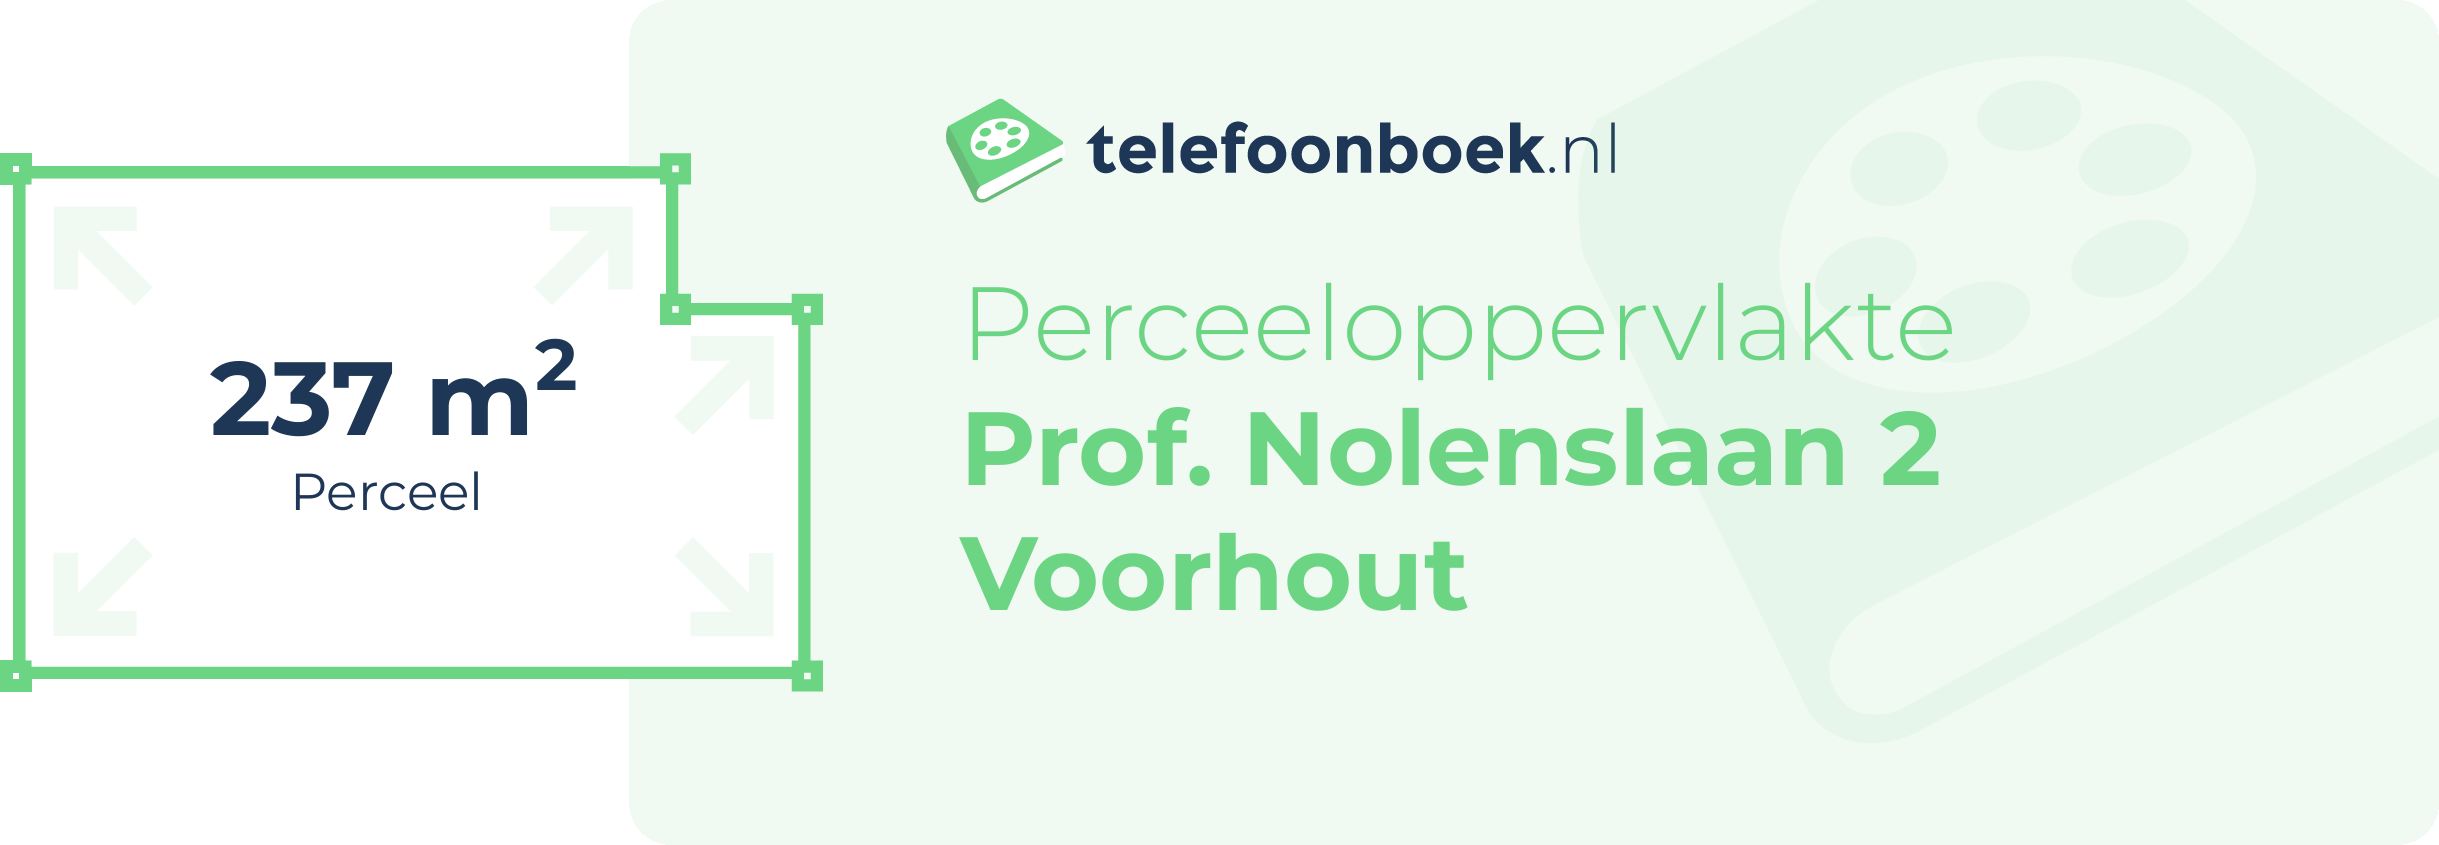 Perceeloppervlakte Prof. Nolenslaan 2 Voorhout